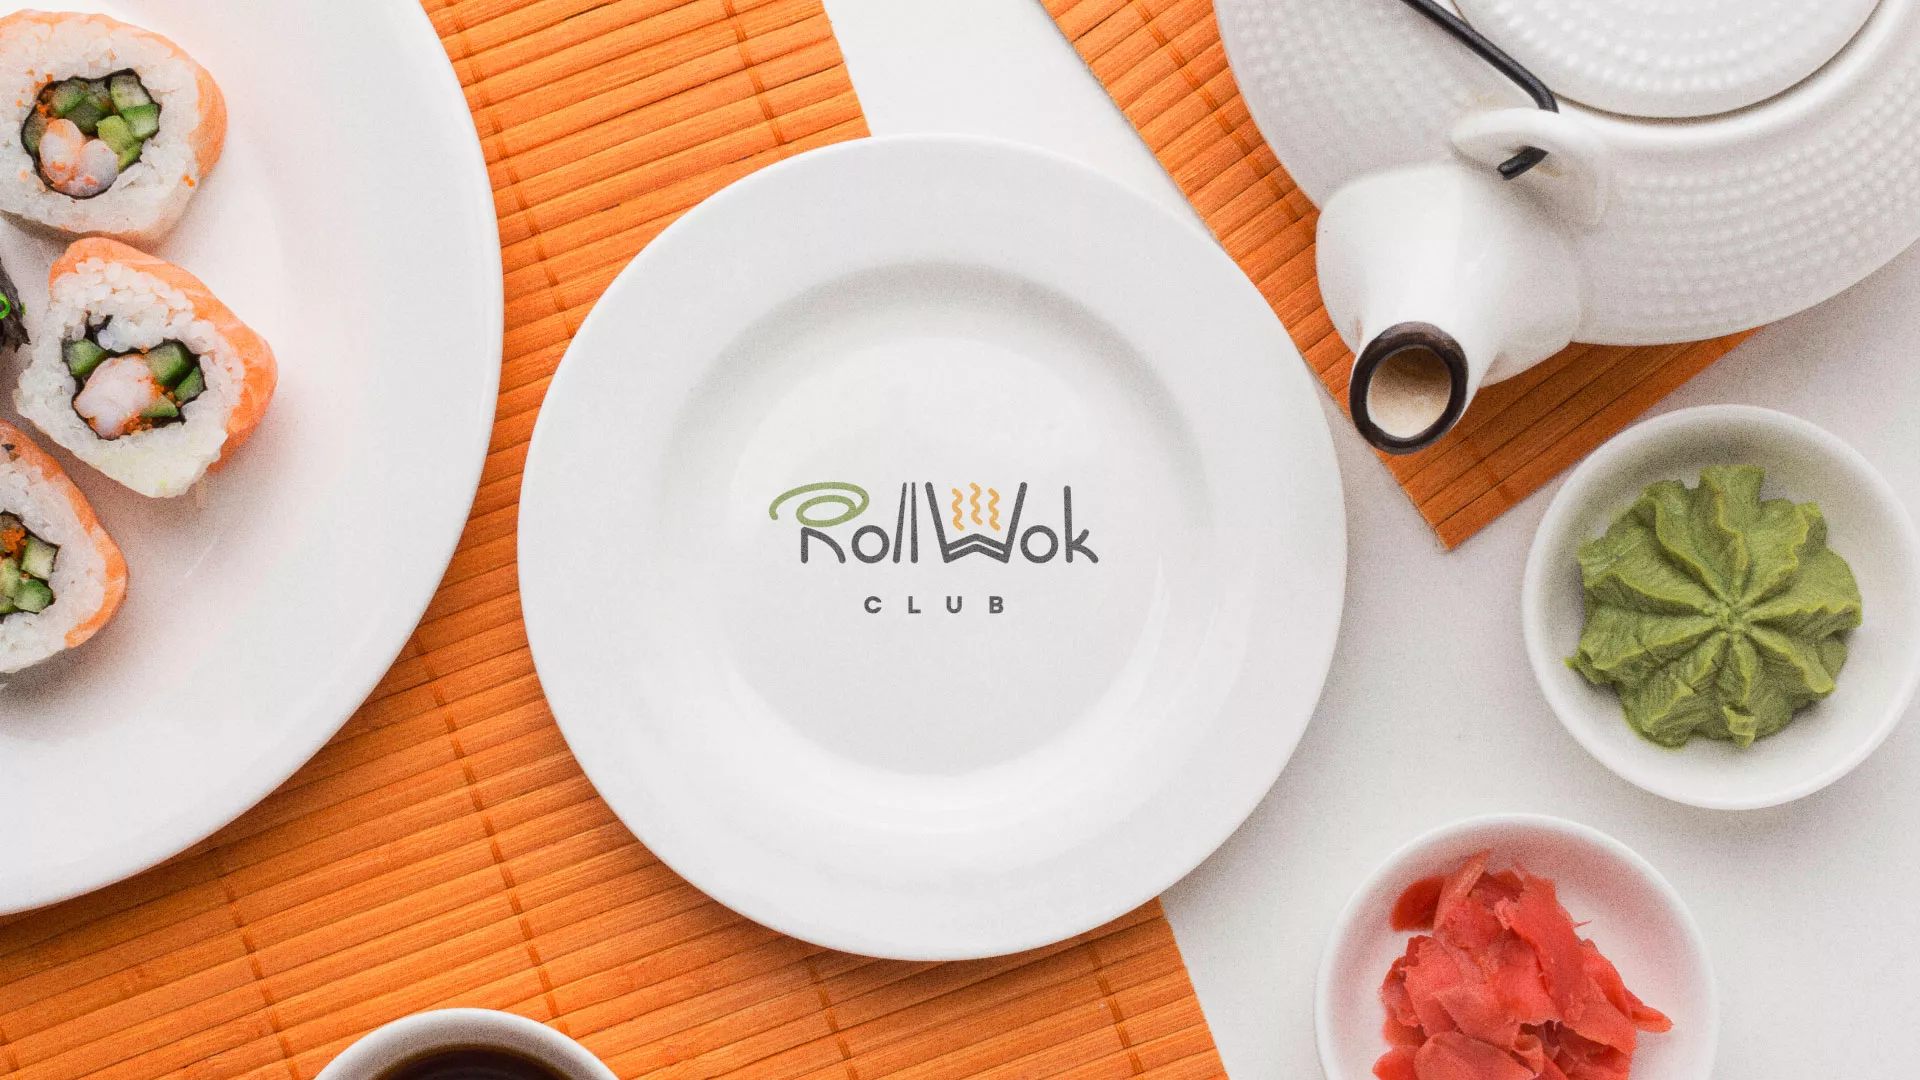 Разработка логотипа и фирменного стиля суши-бара «Roll Wok Club» в Белокурихе